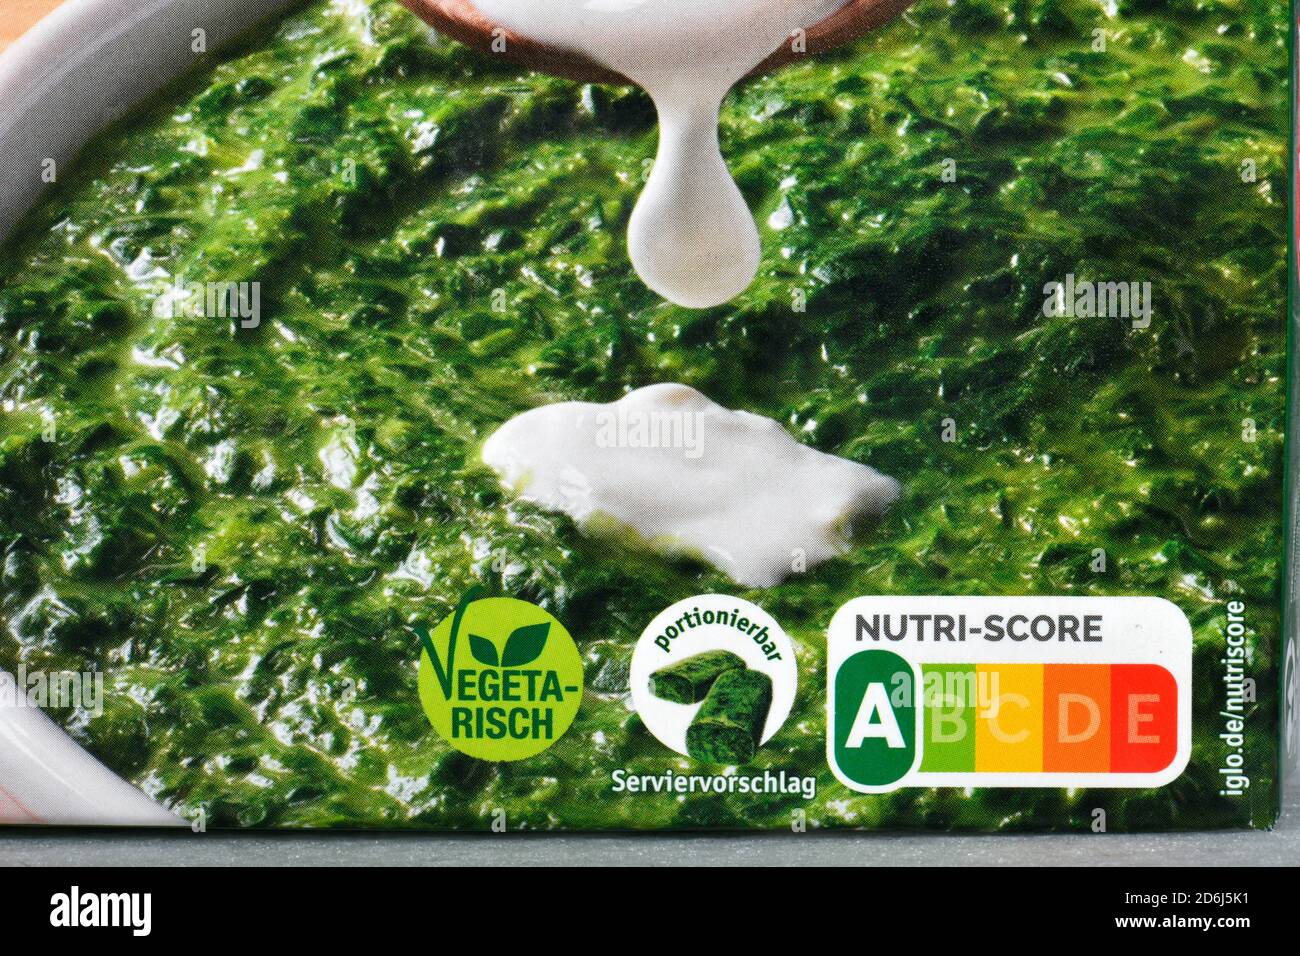 Etichetta NUTRI-SCORE, sistema di etichettatura nutrizionale, introduzione a livello nazionale da novembre 2020, qui su una confezione di spinaci cremati di Iglo Foto Stock